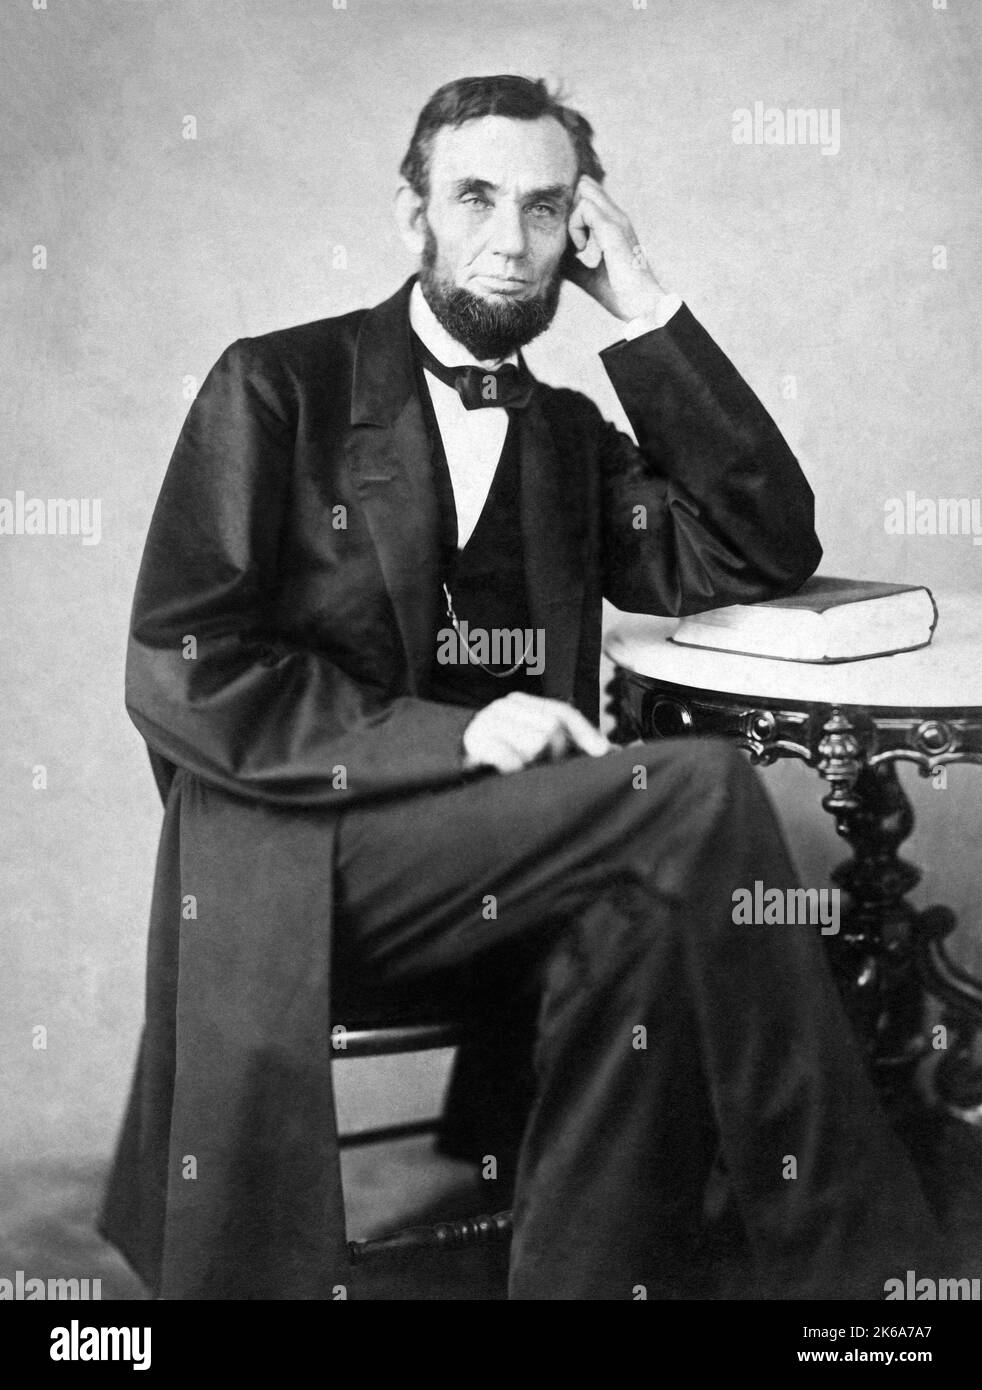 Abraham Lincoln, le président américain de 16th, s'est penché contre un livre tout en étant assis à une table. Banque D'Images